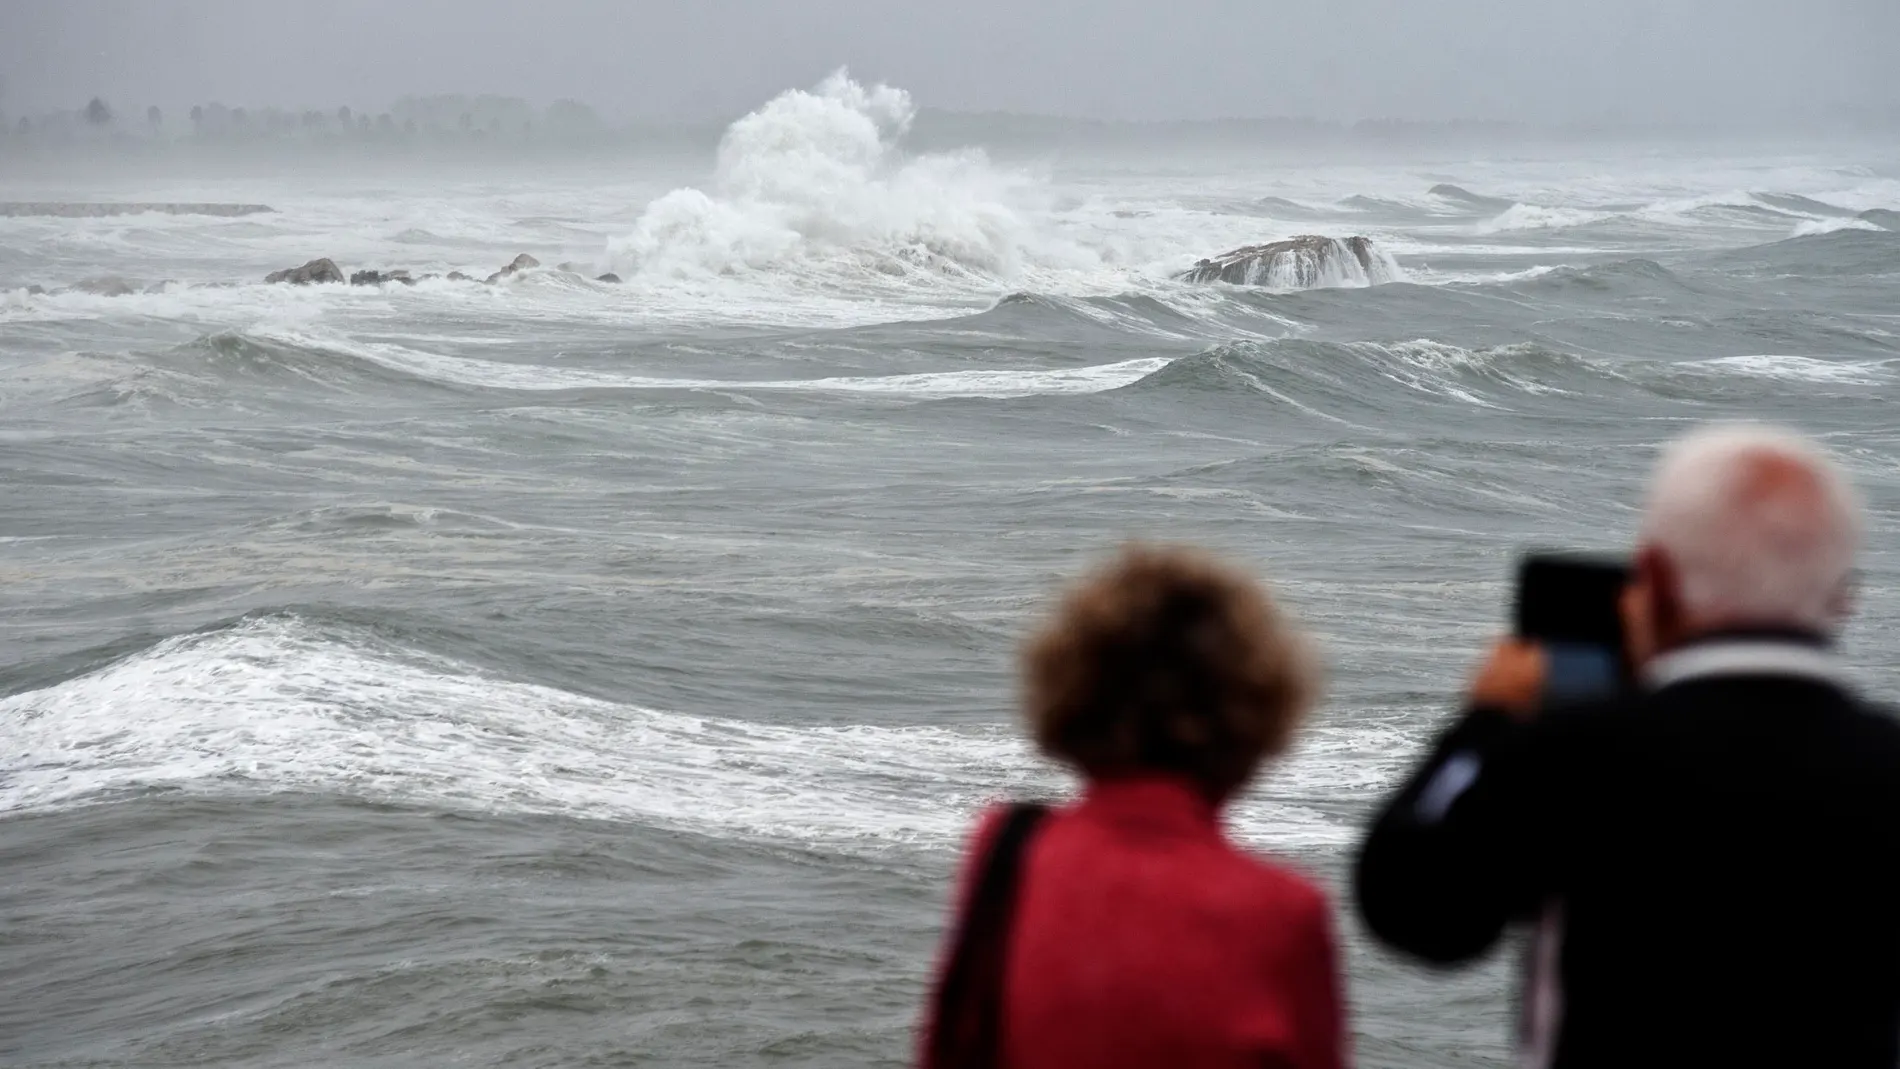 Unos vecinos toman imágenes en una playa afectada por un fuerte temporal.